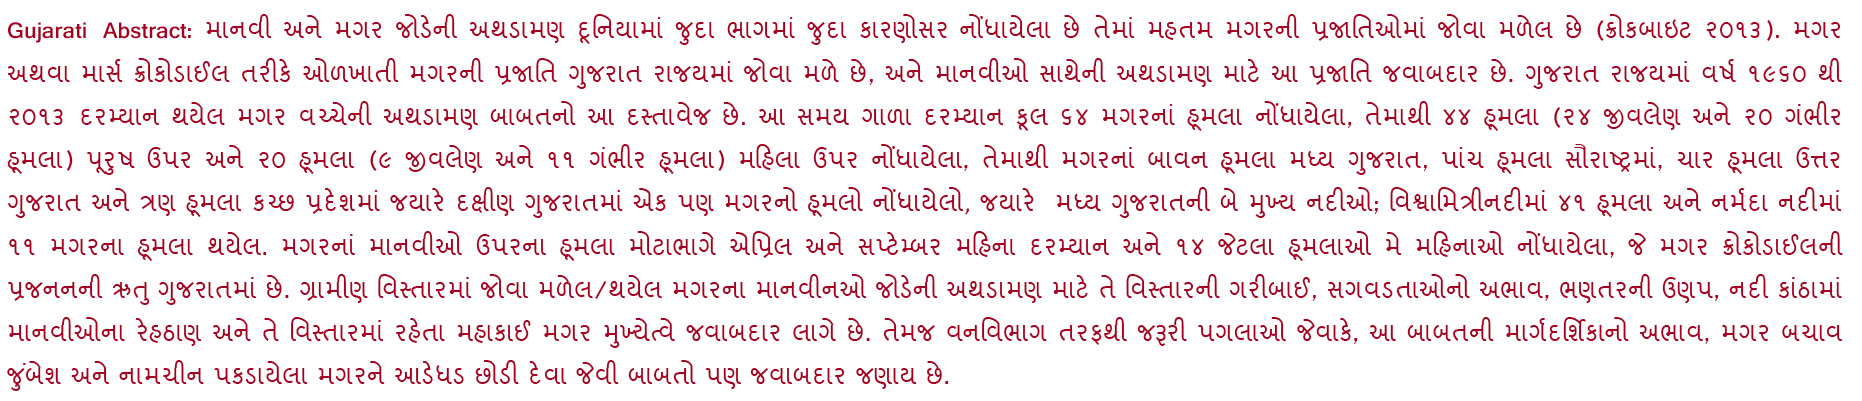 3790_Abstract_Gujarati_25-12-2017.pdf